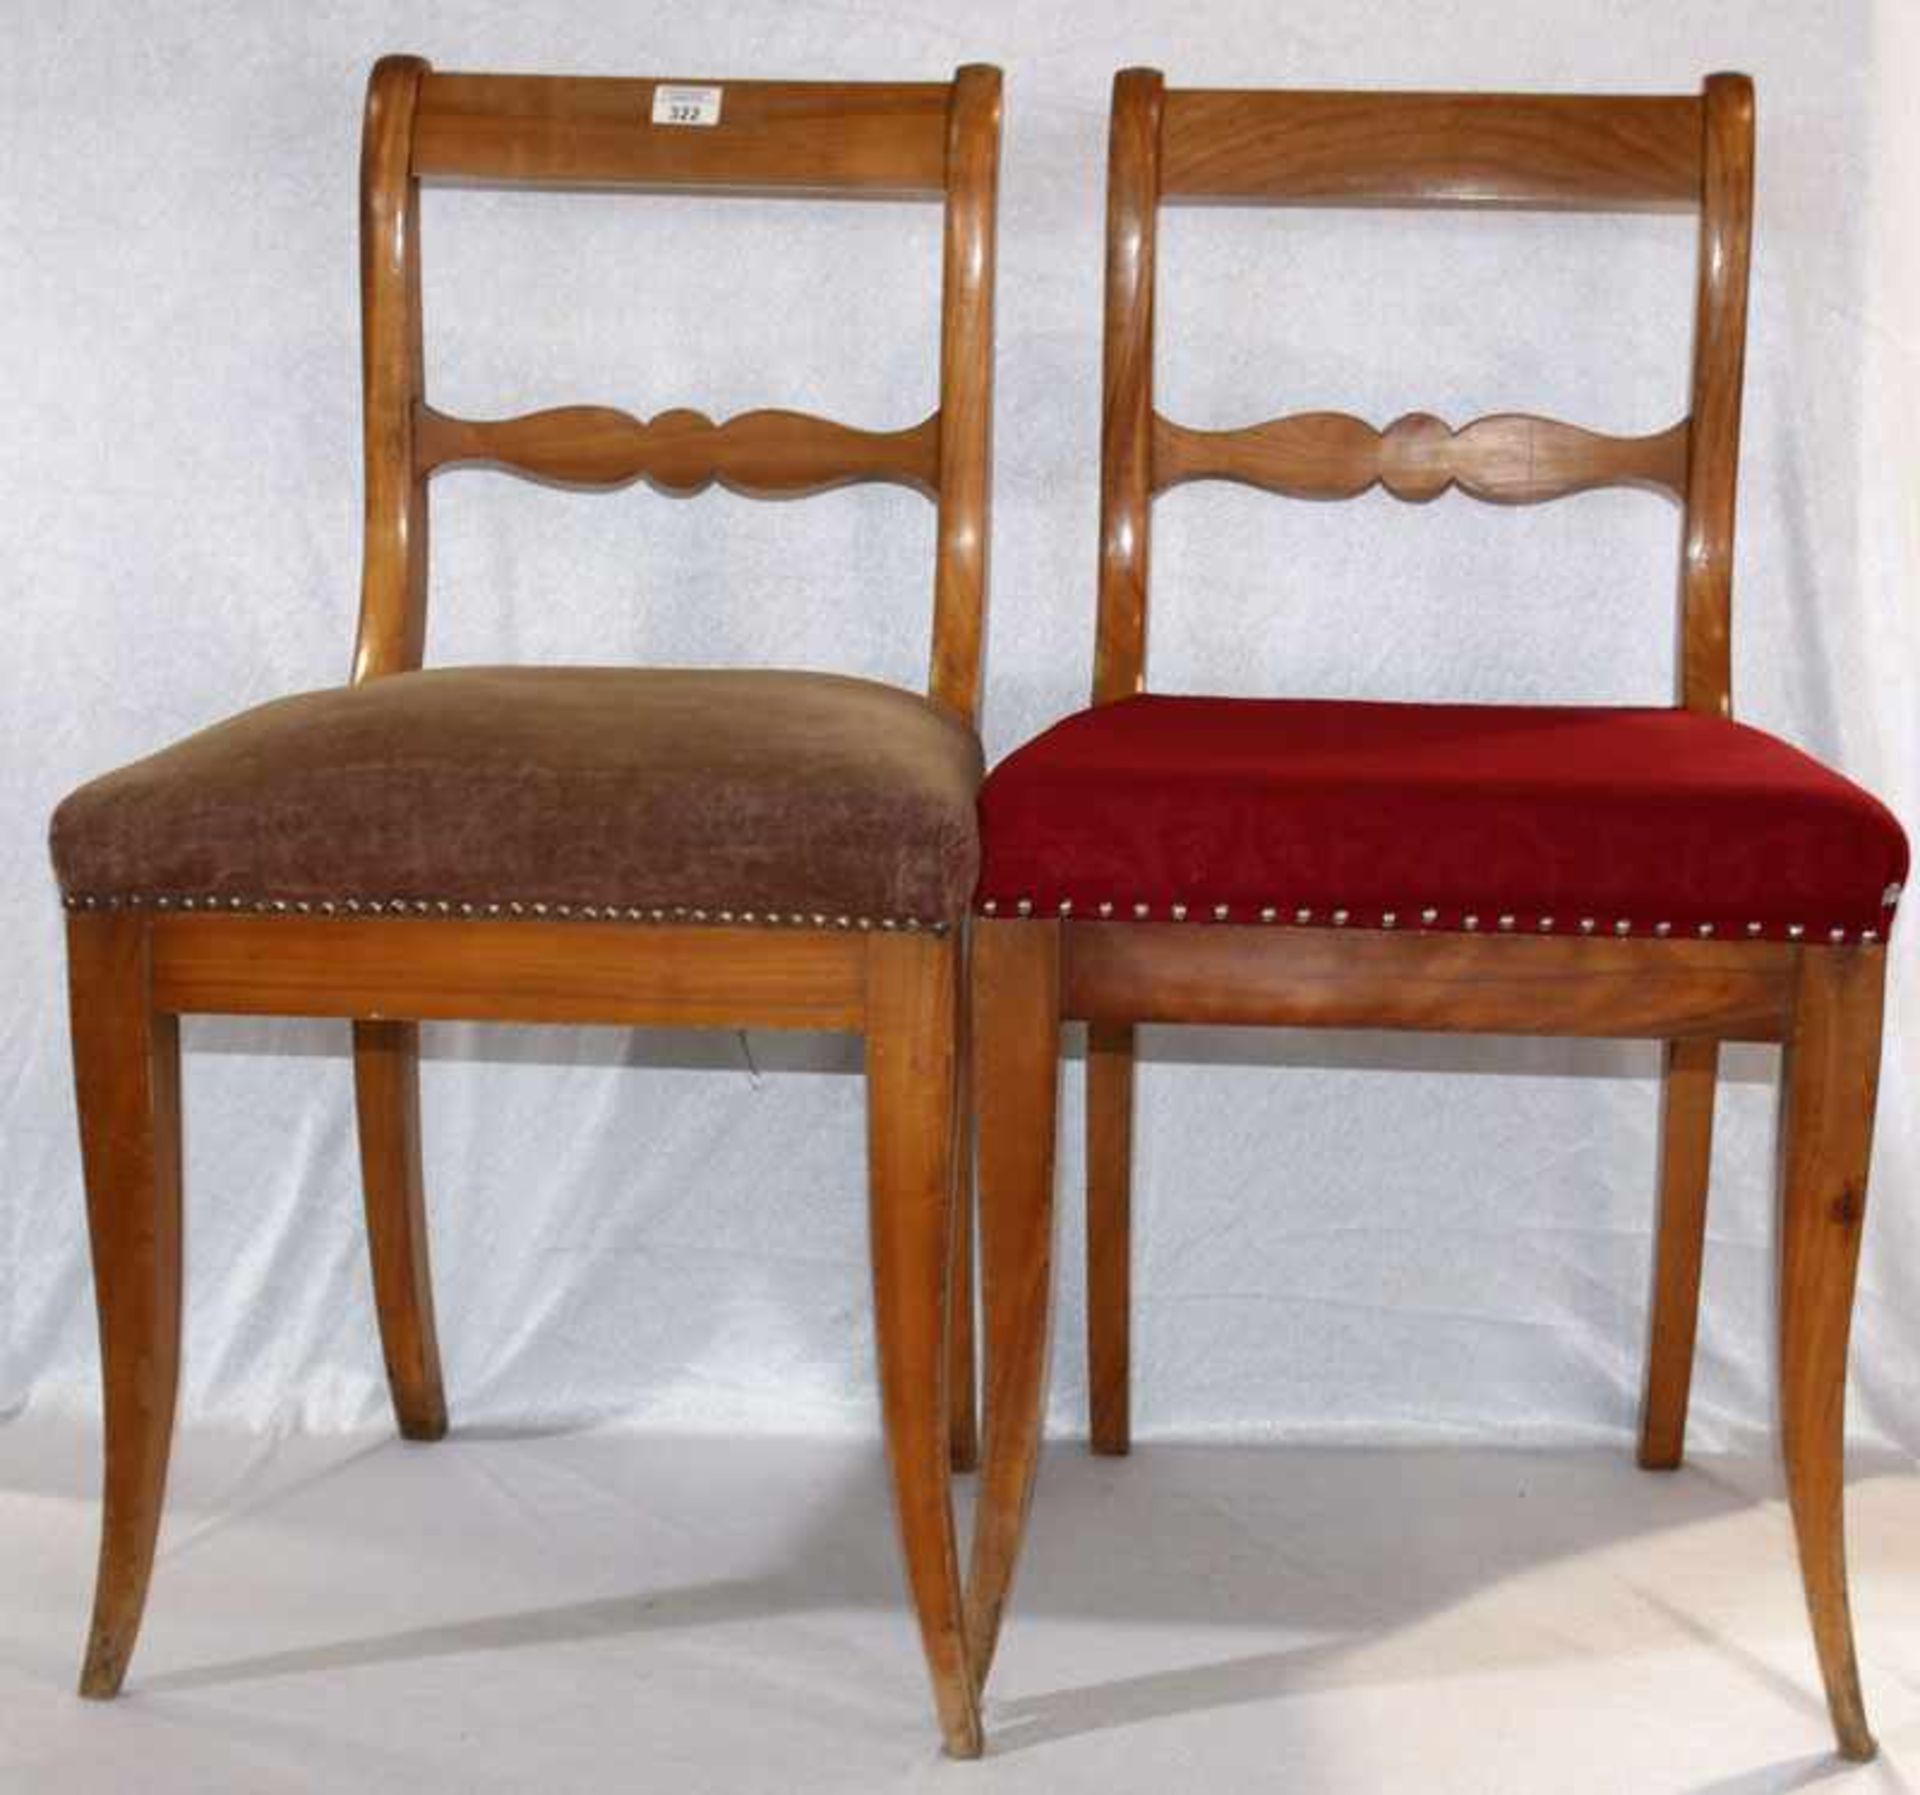 6 Holzstühle, Kirsche, 19. Jahrhundert, Sitze gepolstert, 4 braun und 2 rot bezogen, Polster stark